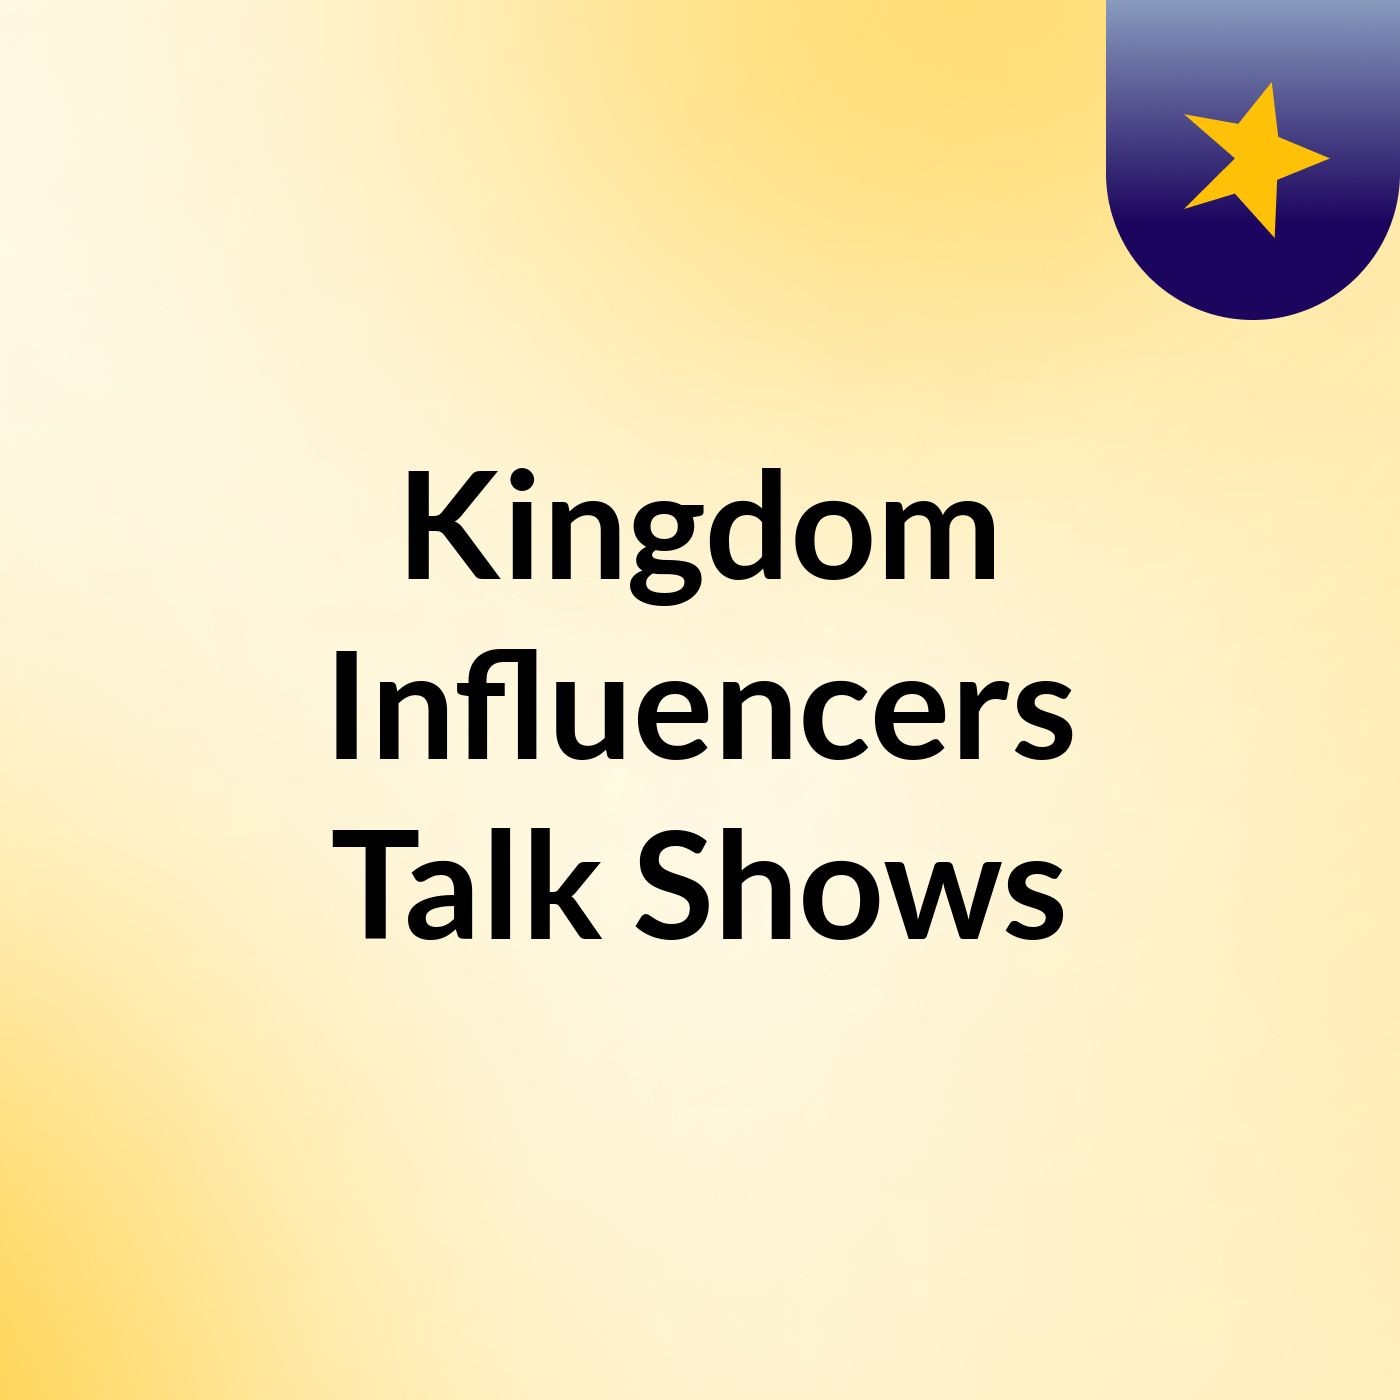 Kingdom Influencers Talk Shows